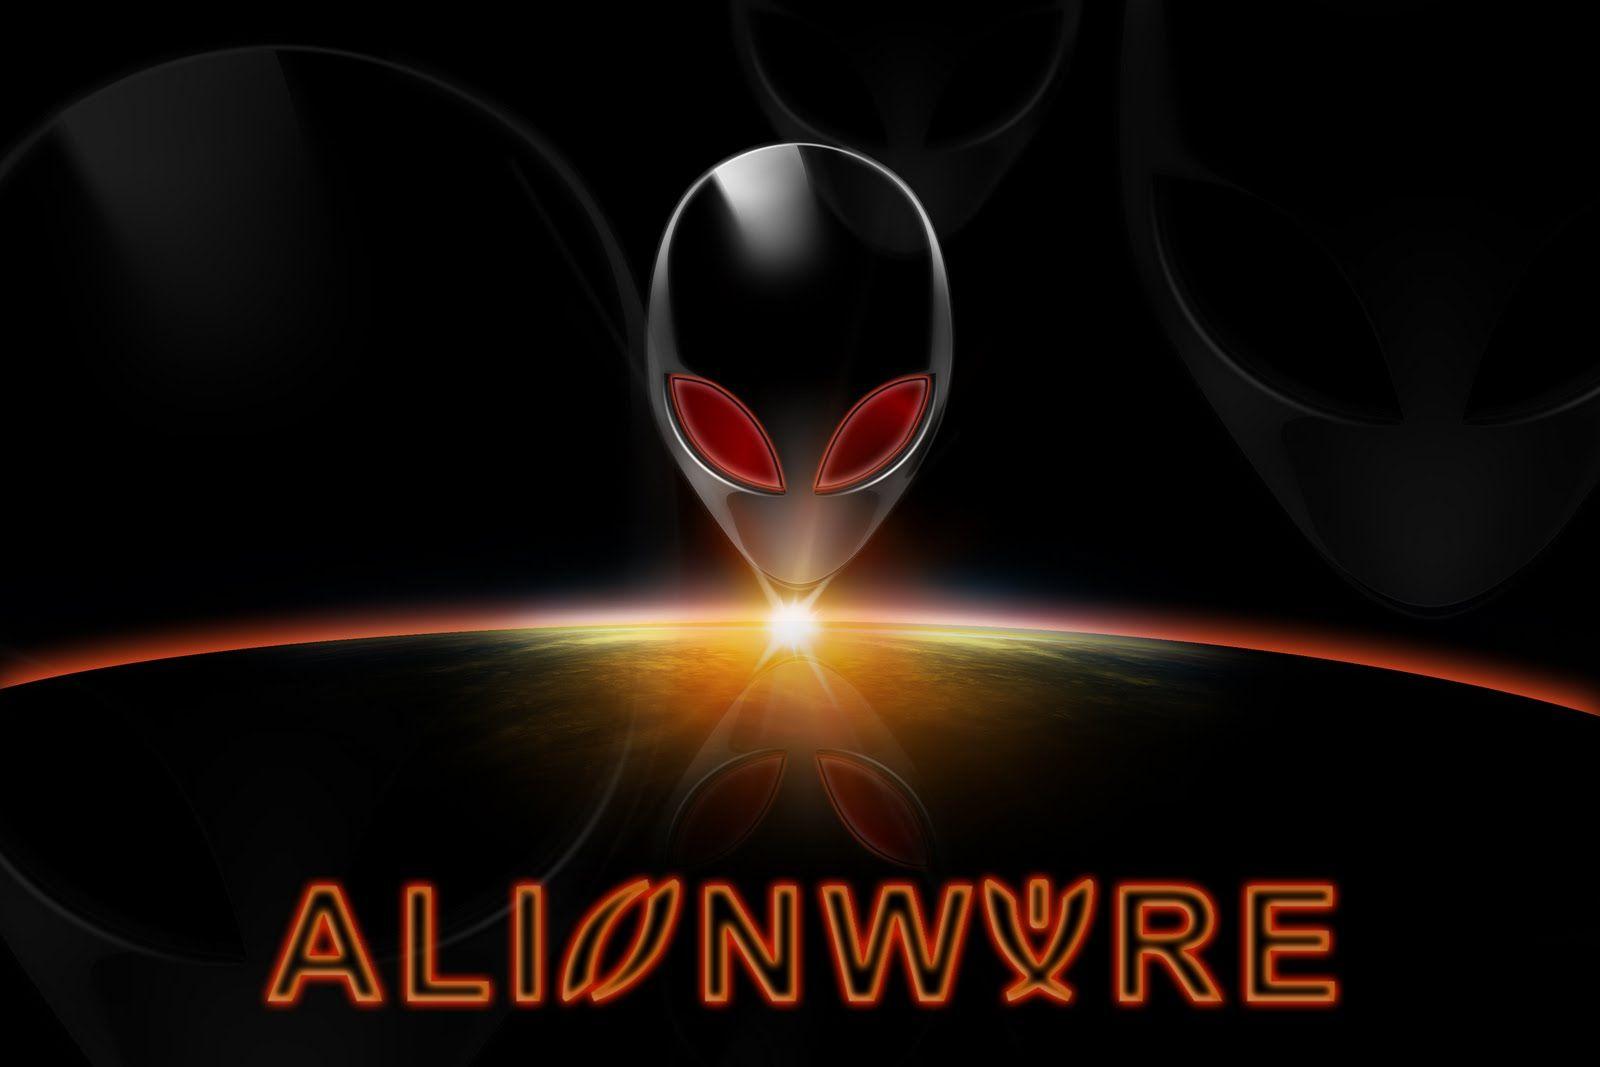 Orange Alienware Wallpapers Top Free Orange Alienware Backgrounds Wallpaperaccess 9727